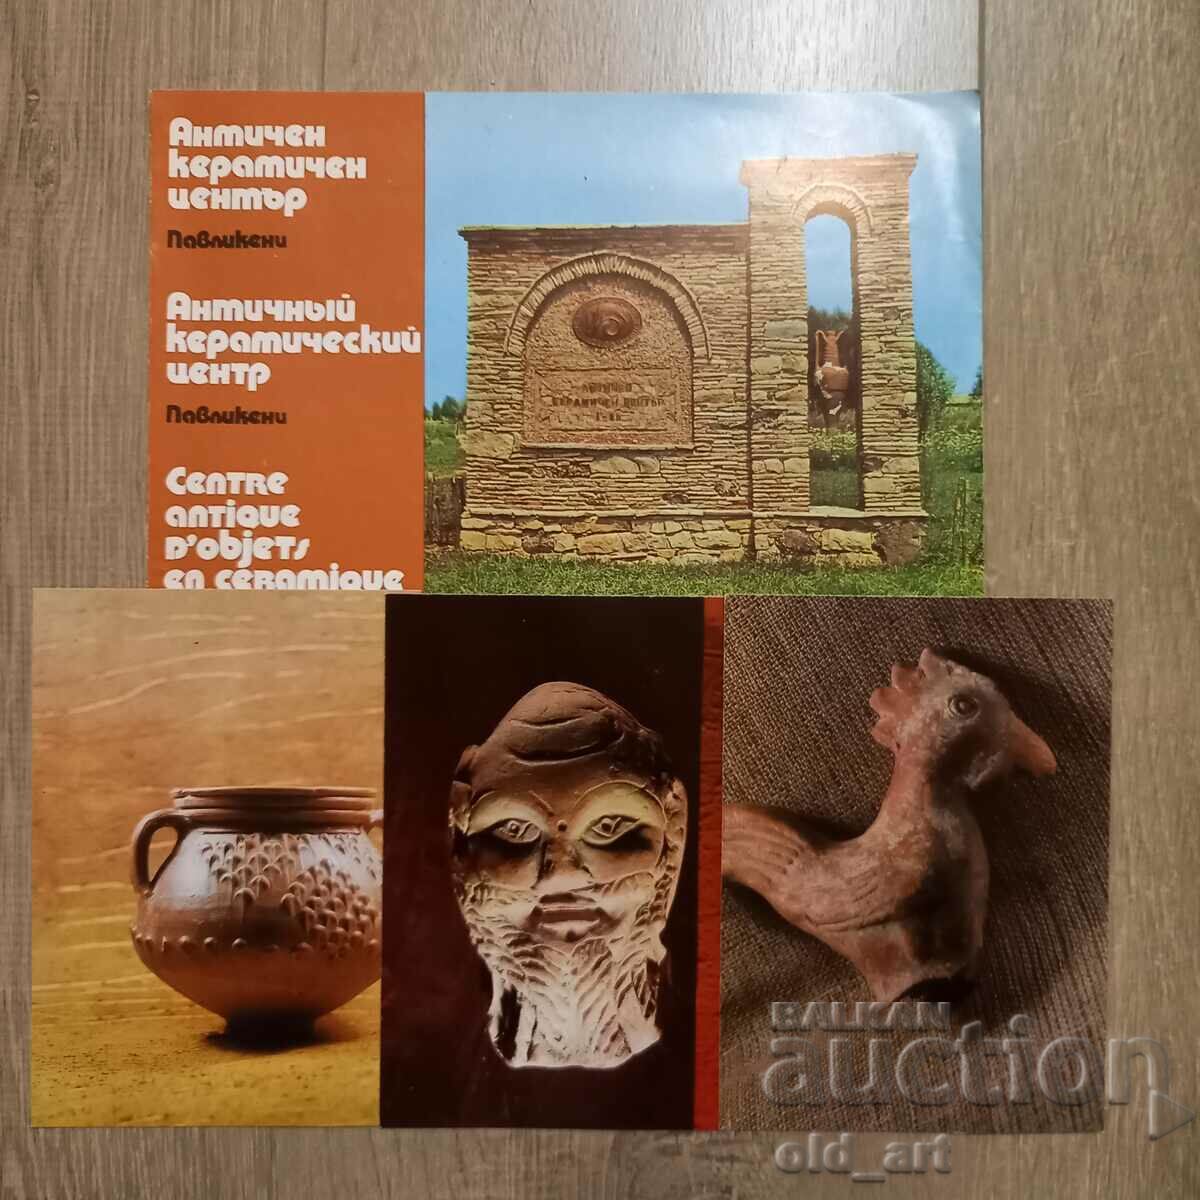 Catalog - Pavlikeni Antique Ceramic Center